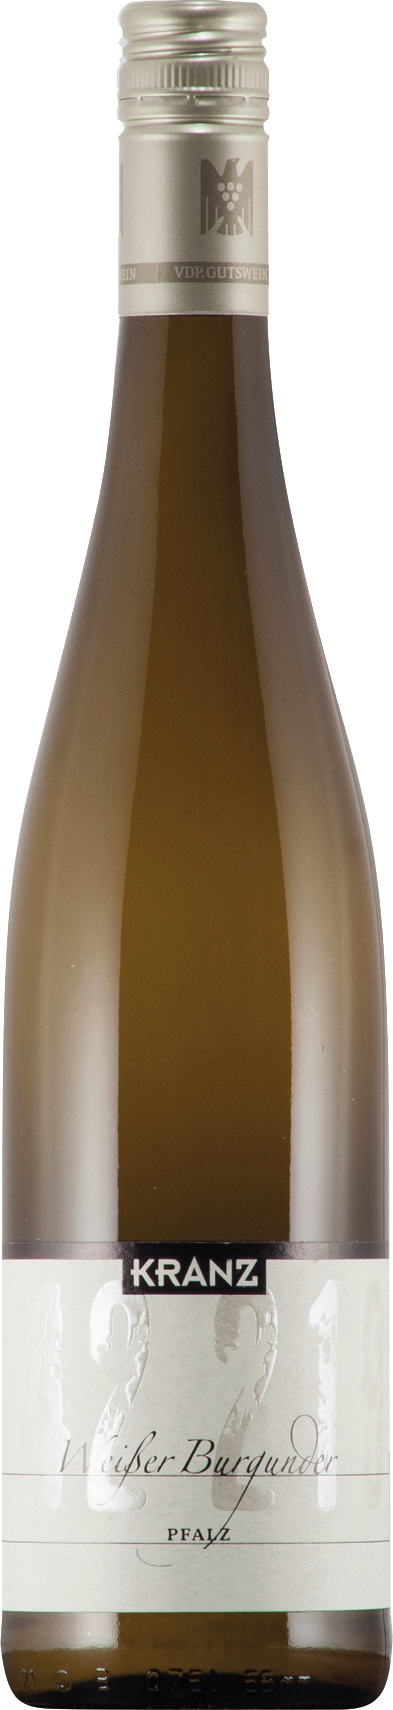 Weißburgunder Qualitätswein trocken